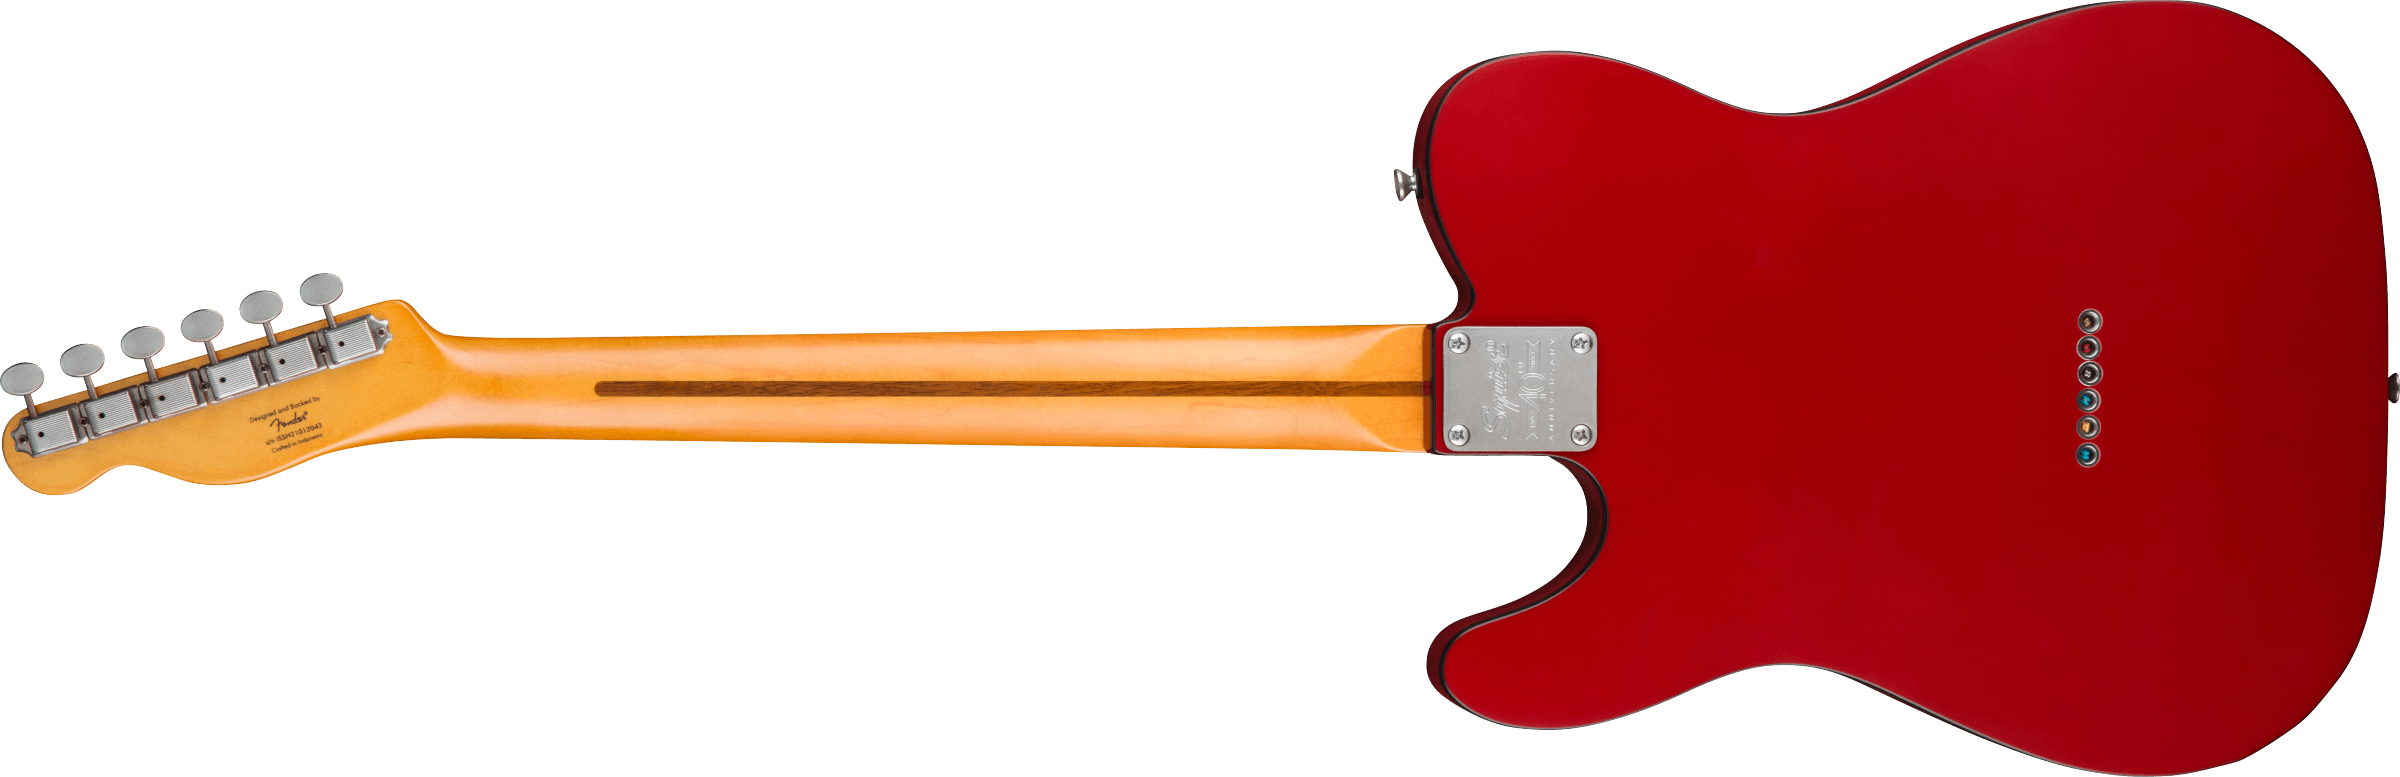 Squier Tele 40th Anniversary Vintage Edition Mn - Satin Dakota Red - Guitarra eléctrica con forma de tel - Variation 1